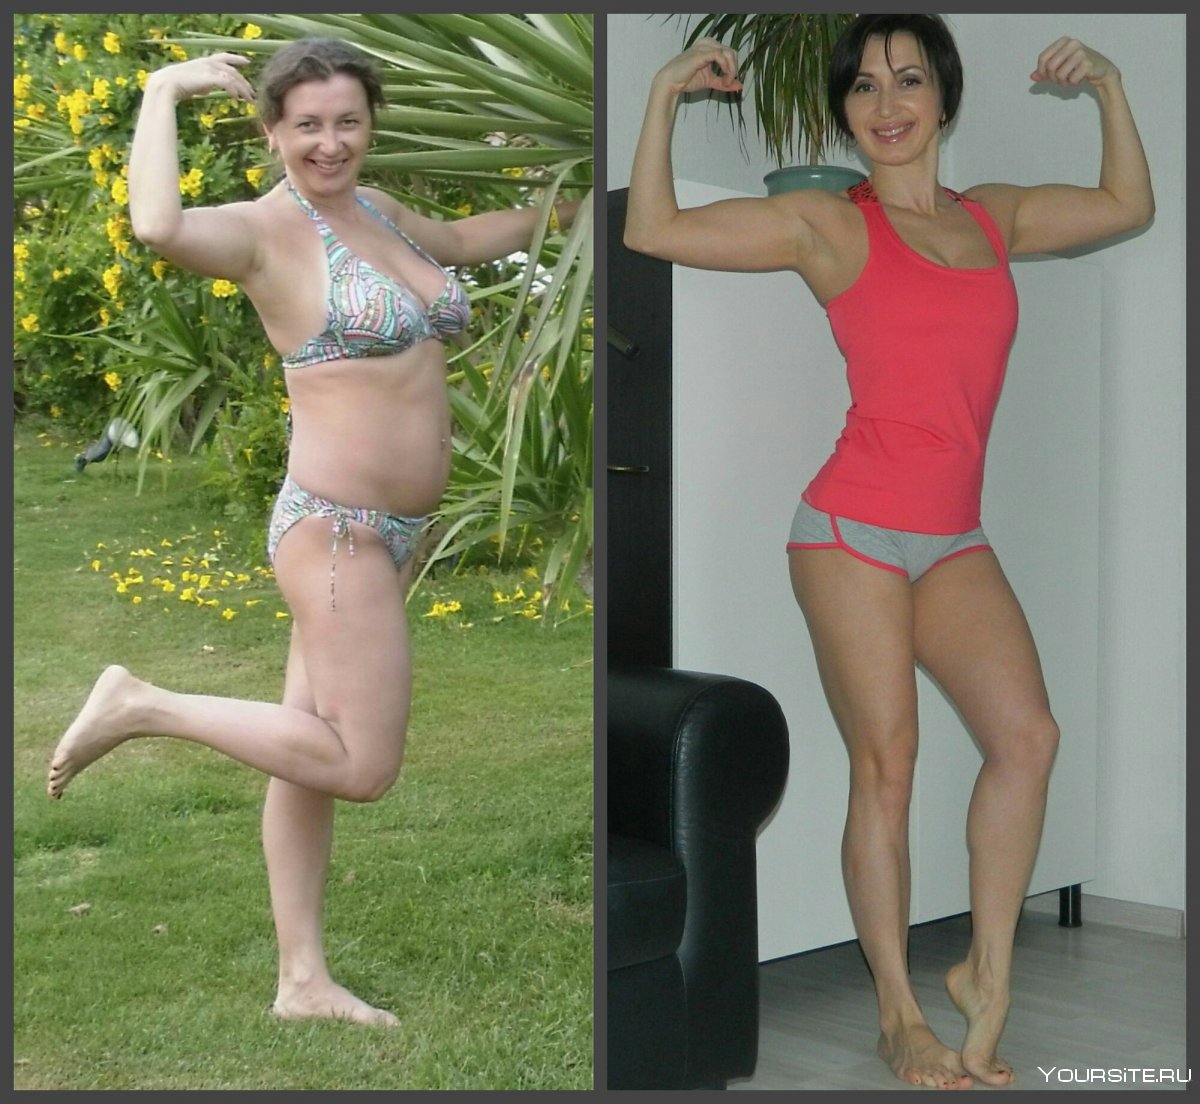 Бег — результаты до и после тренировки для похудения